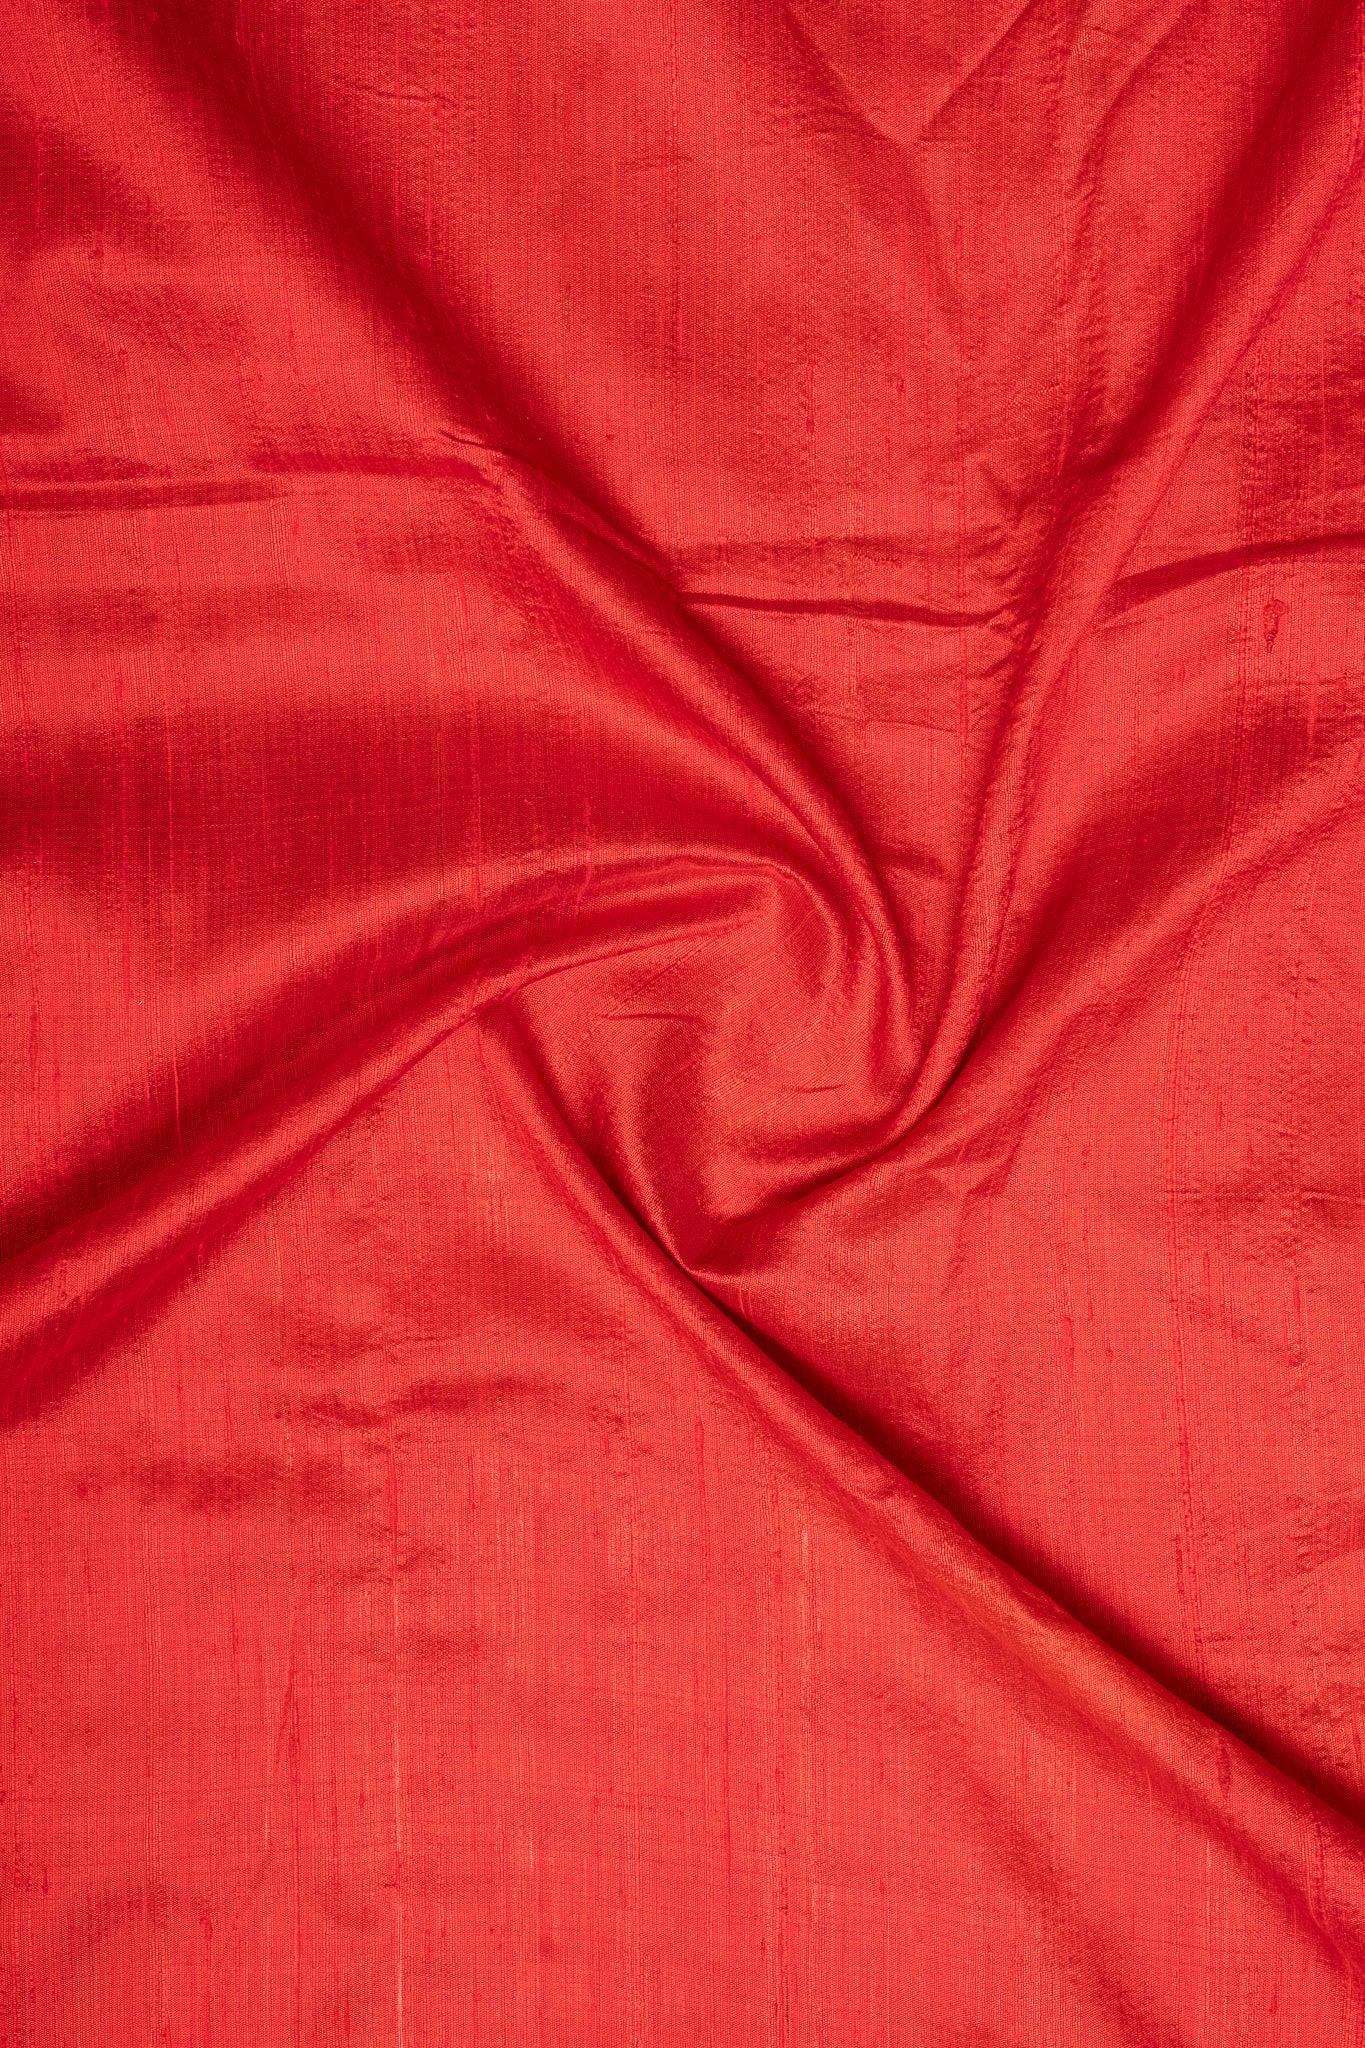 Red and Black Pure Designer Tussar Saree - Clio Silks